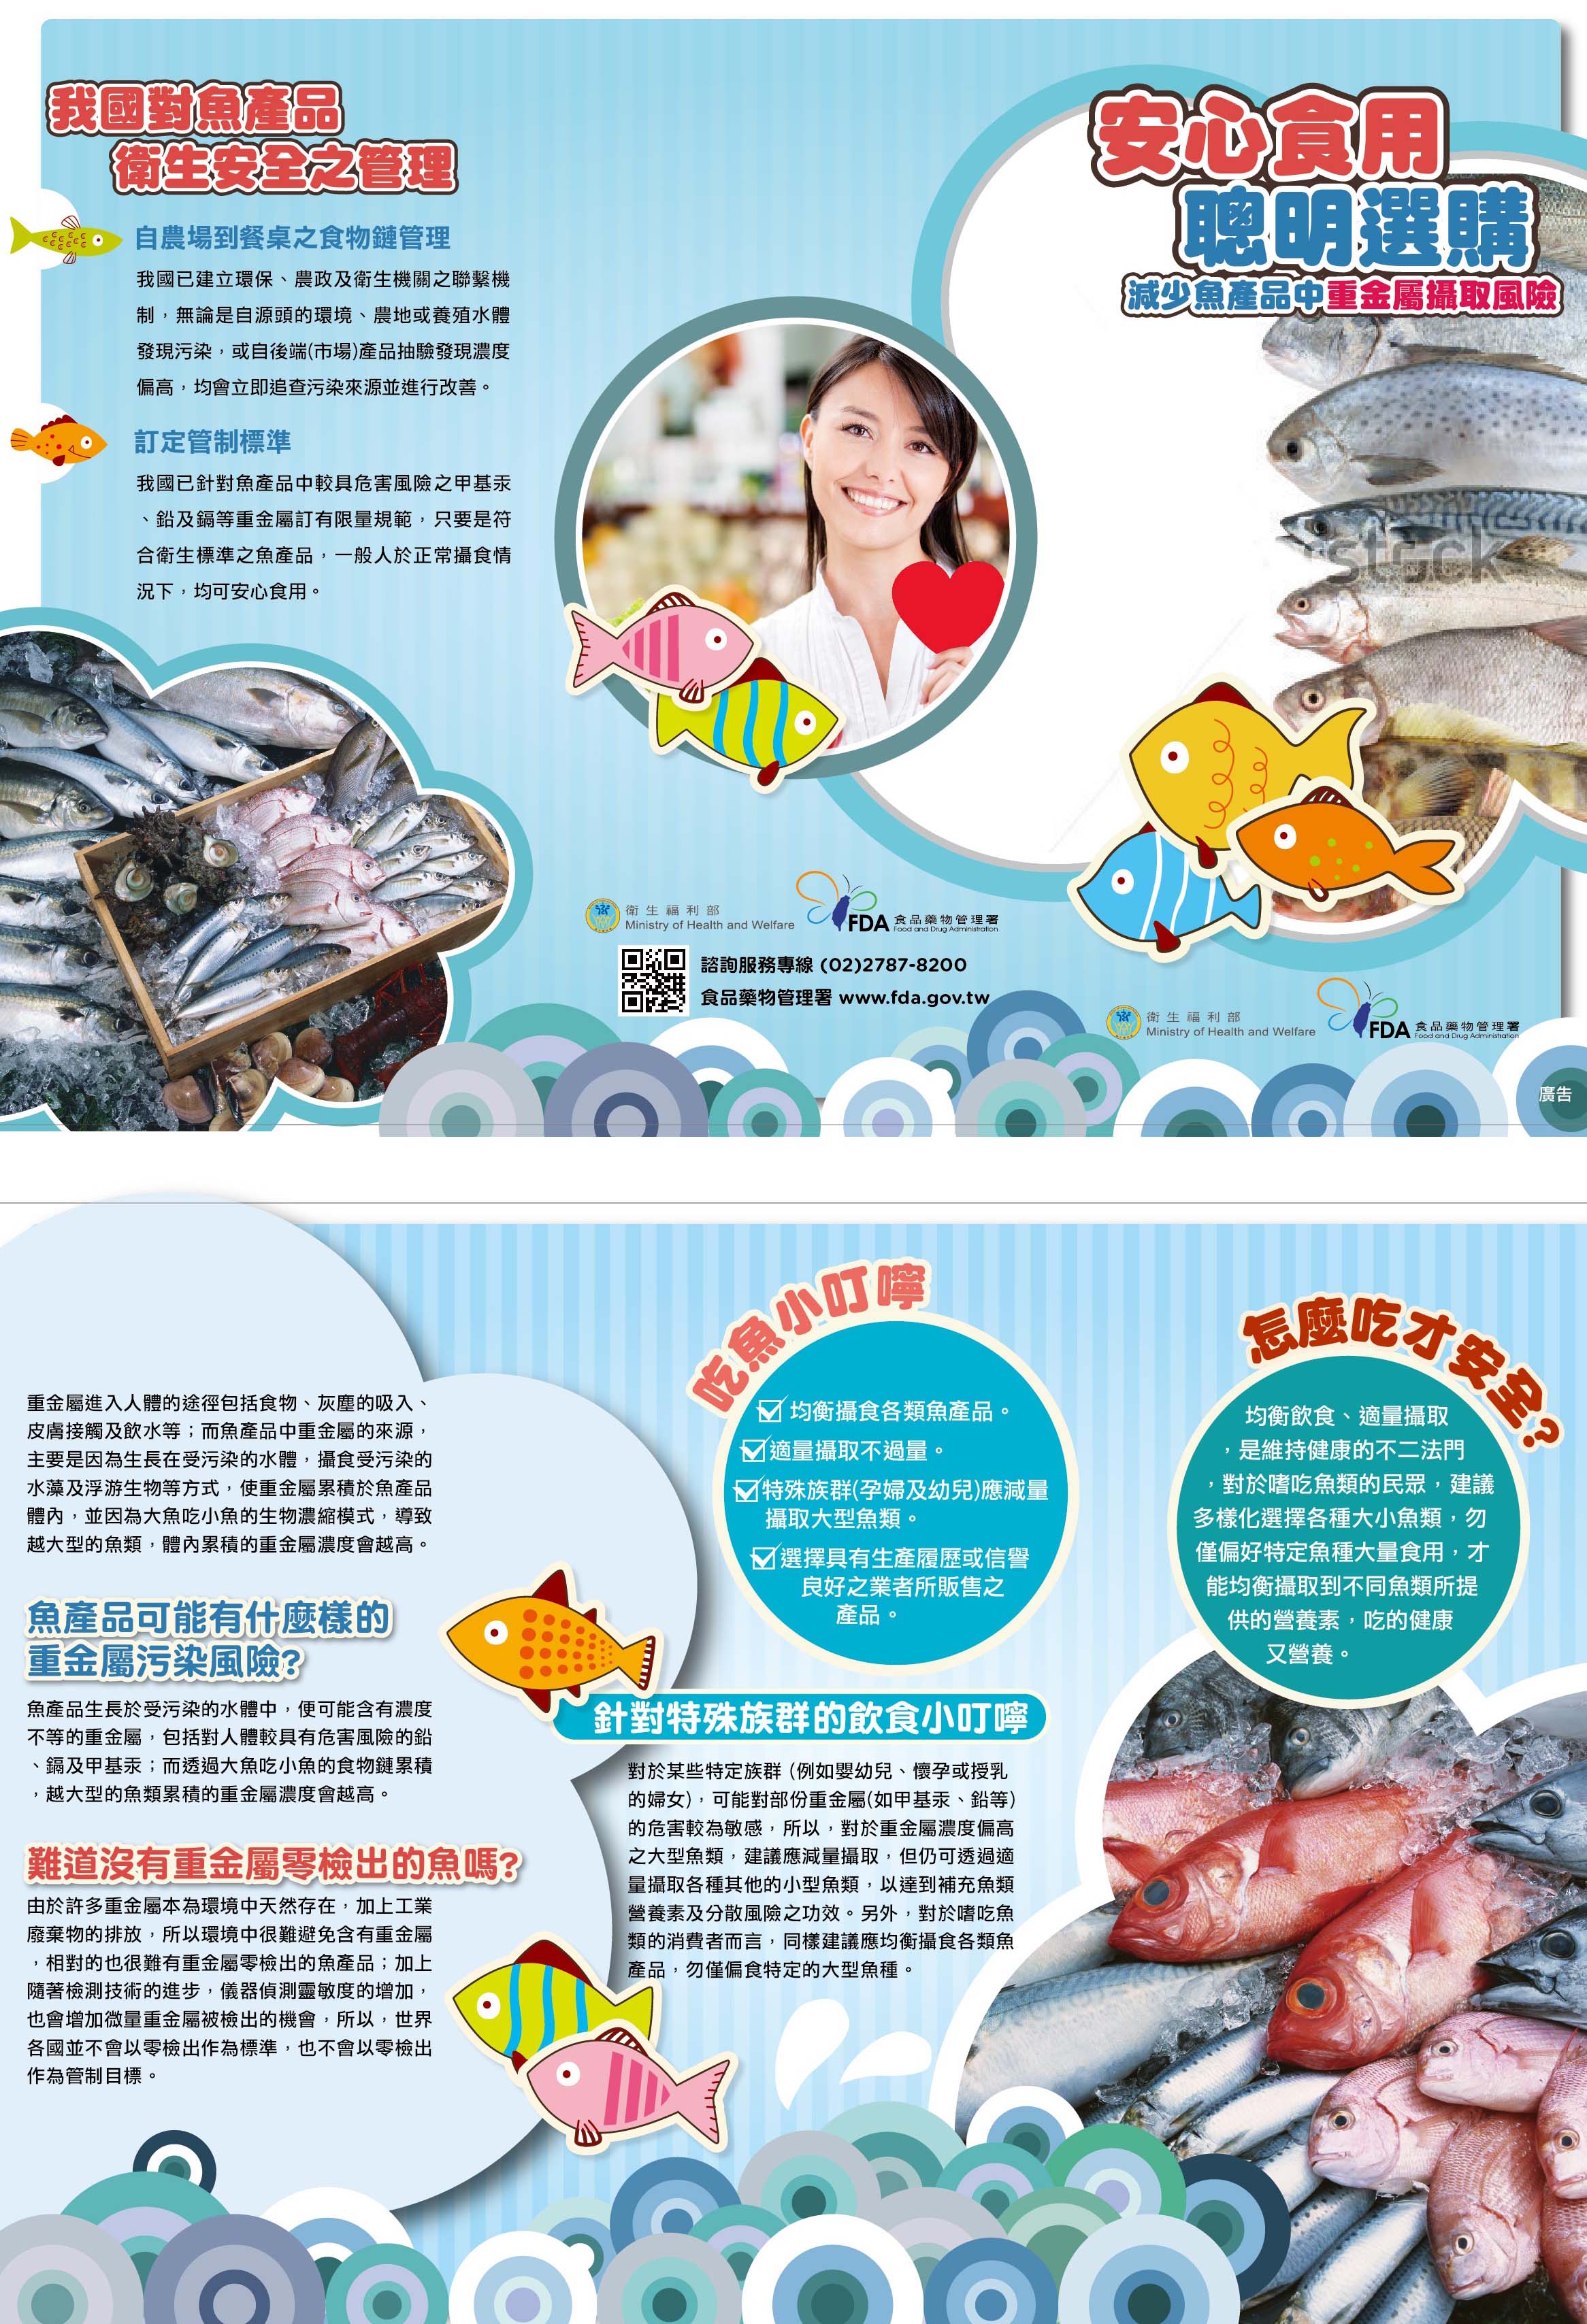 安心食用聰明選購-減少魚產品中 重金屬攝取風險